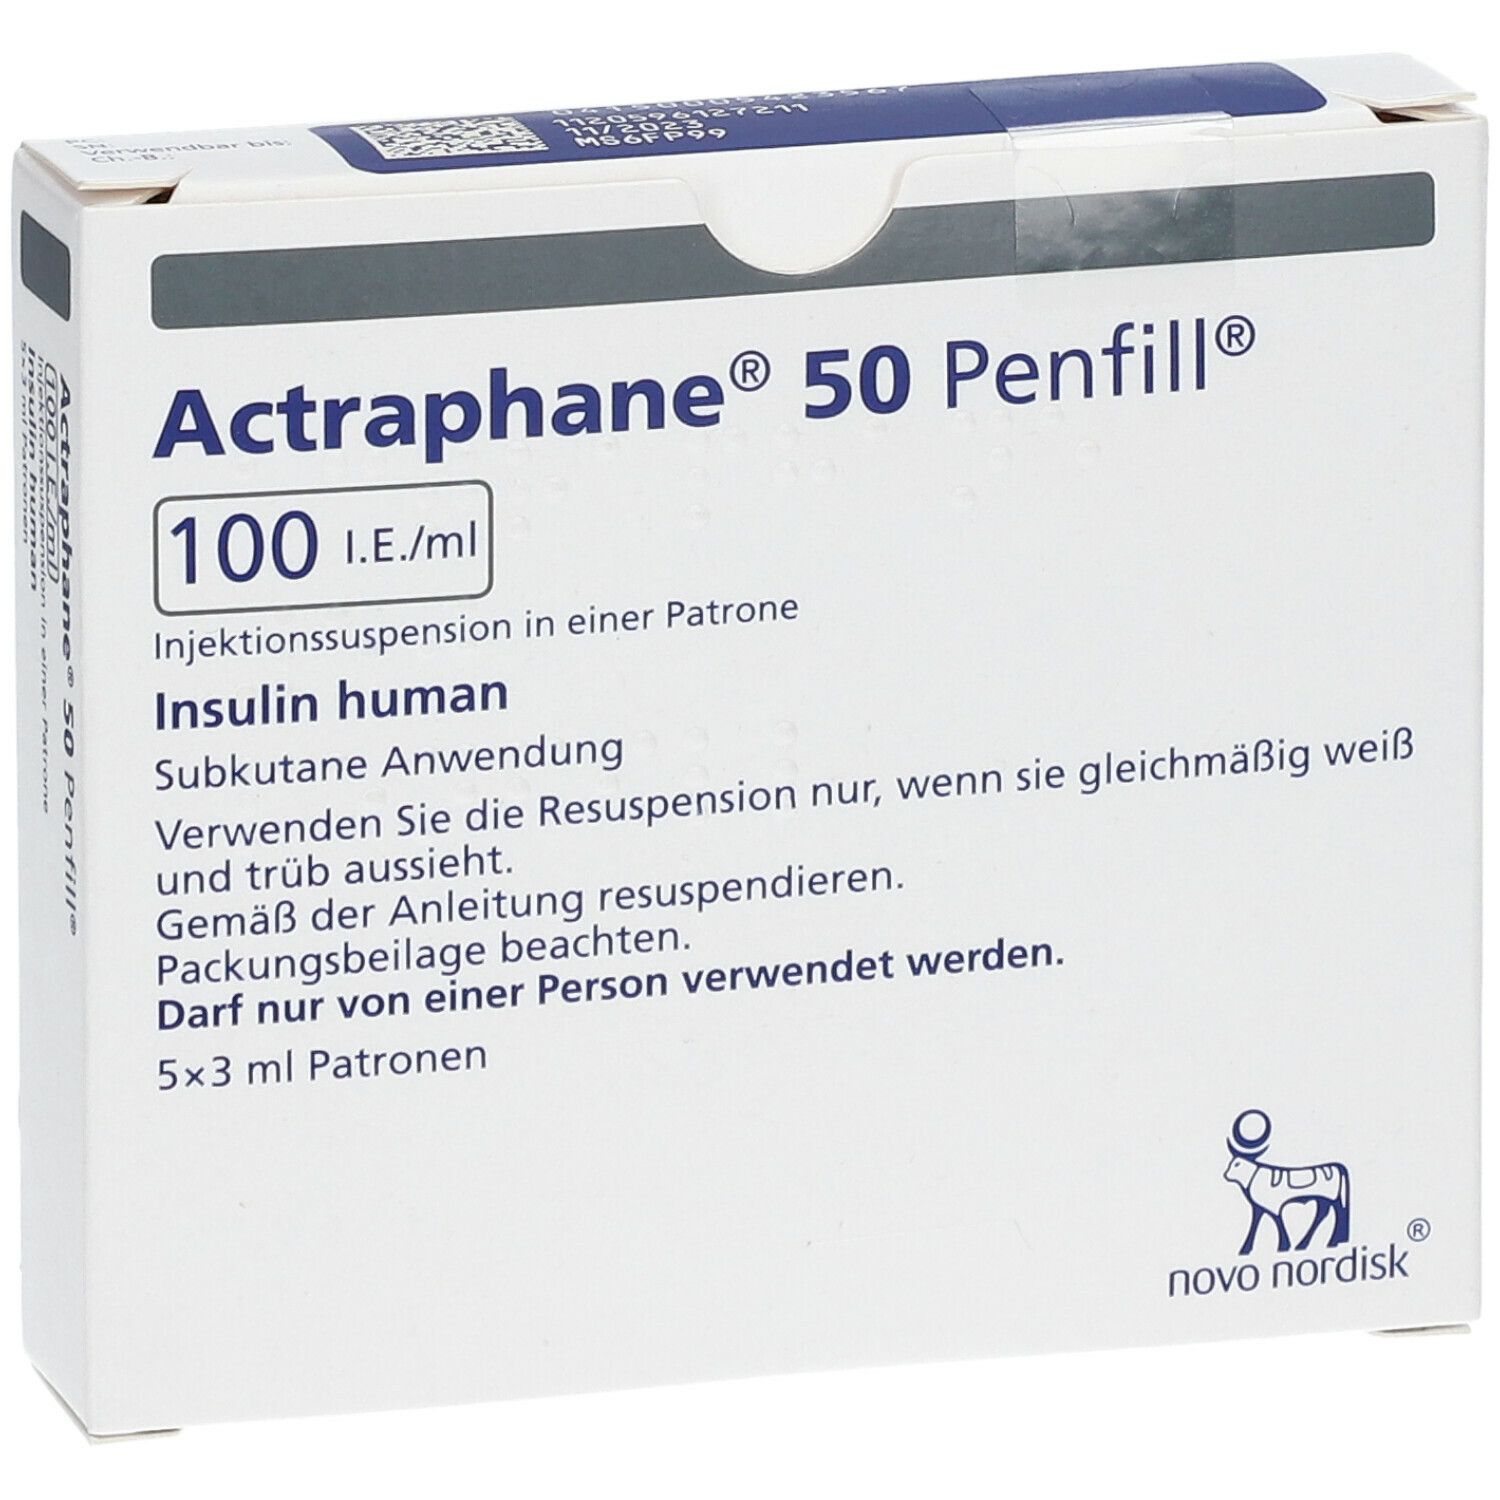 Actraphane® 50 Penfill® 100 I.E./ml